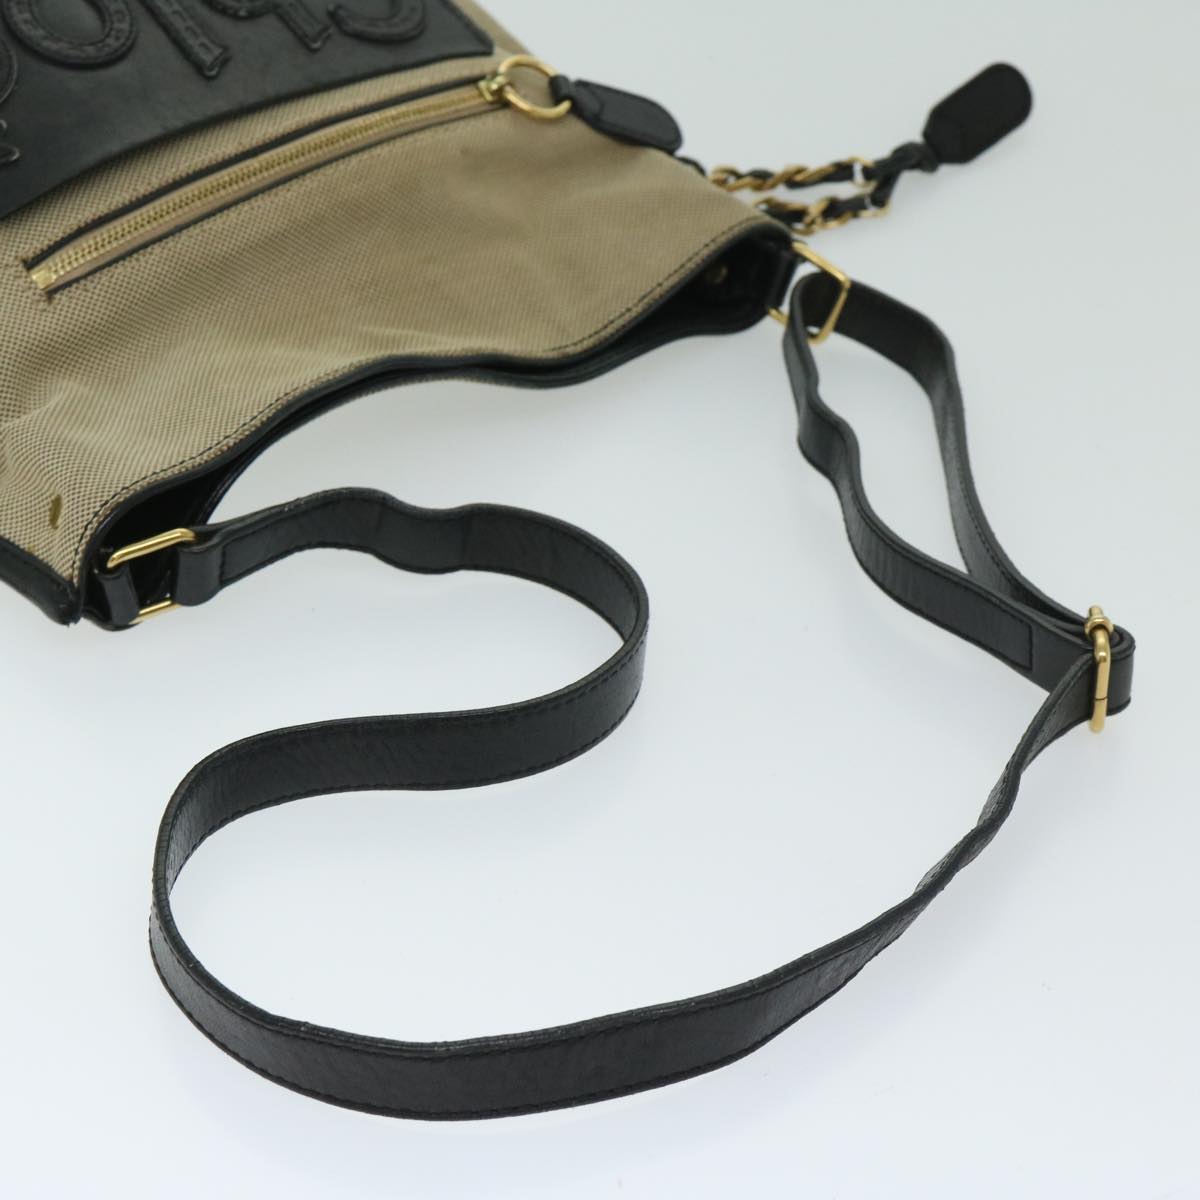 Chloe Harley Shoulder Bag Canvas Leather Beige Black Auth 67269